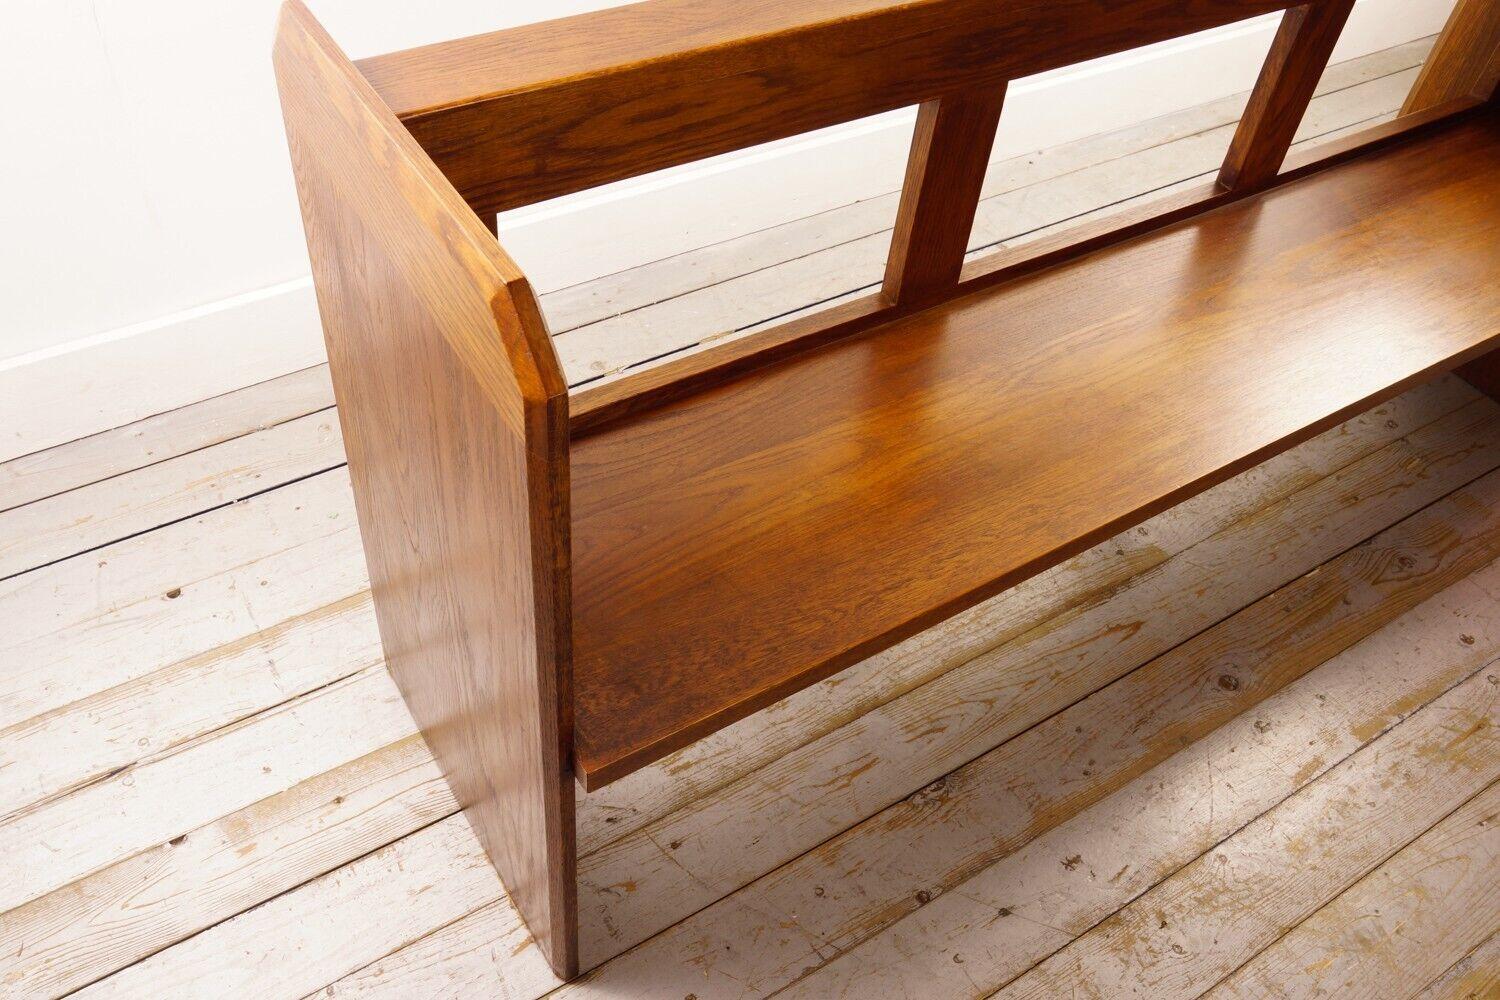 Eichenholztisch aus dem späten 20. 

Eine Eichenholzbank aus dem späten 20. Jahrhundert mit einer Breite von 180 cm. Kirchenbänke waren jahrhundertelang in Kirchen üblich und dienten als Sitzgelegenheit für Gottesdienstbesucher. Eichenholz, das für